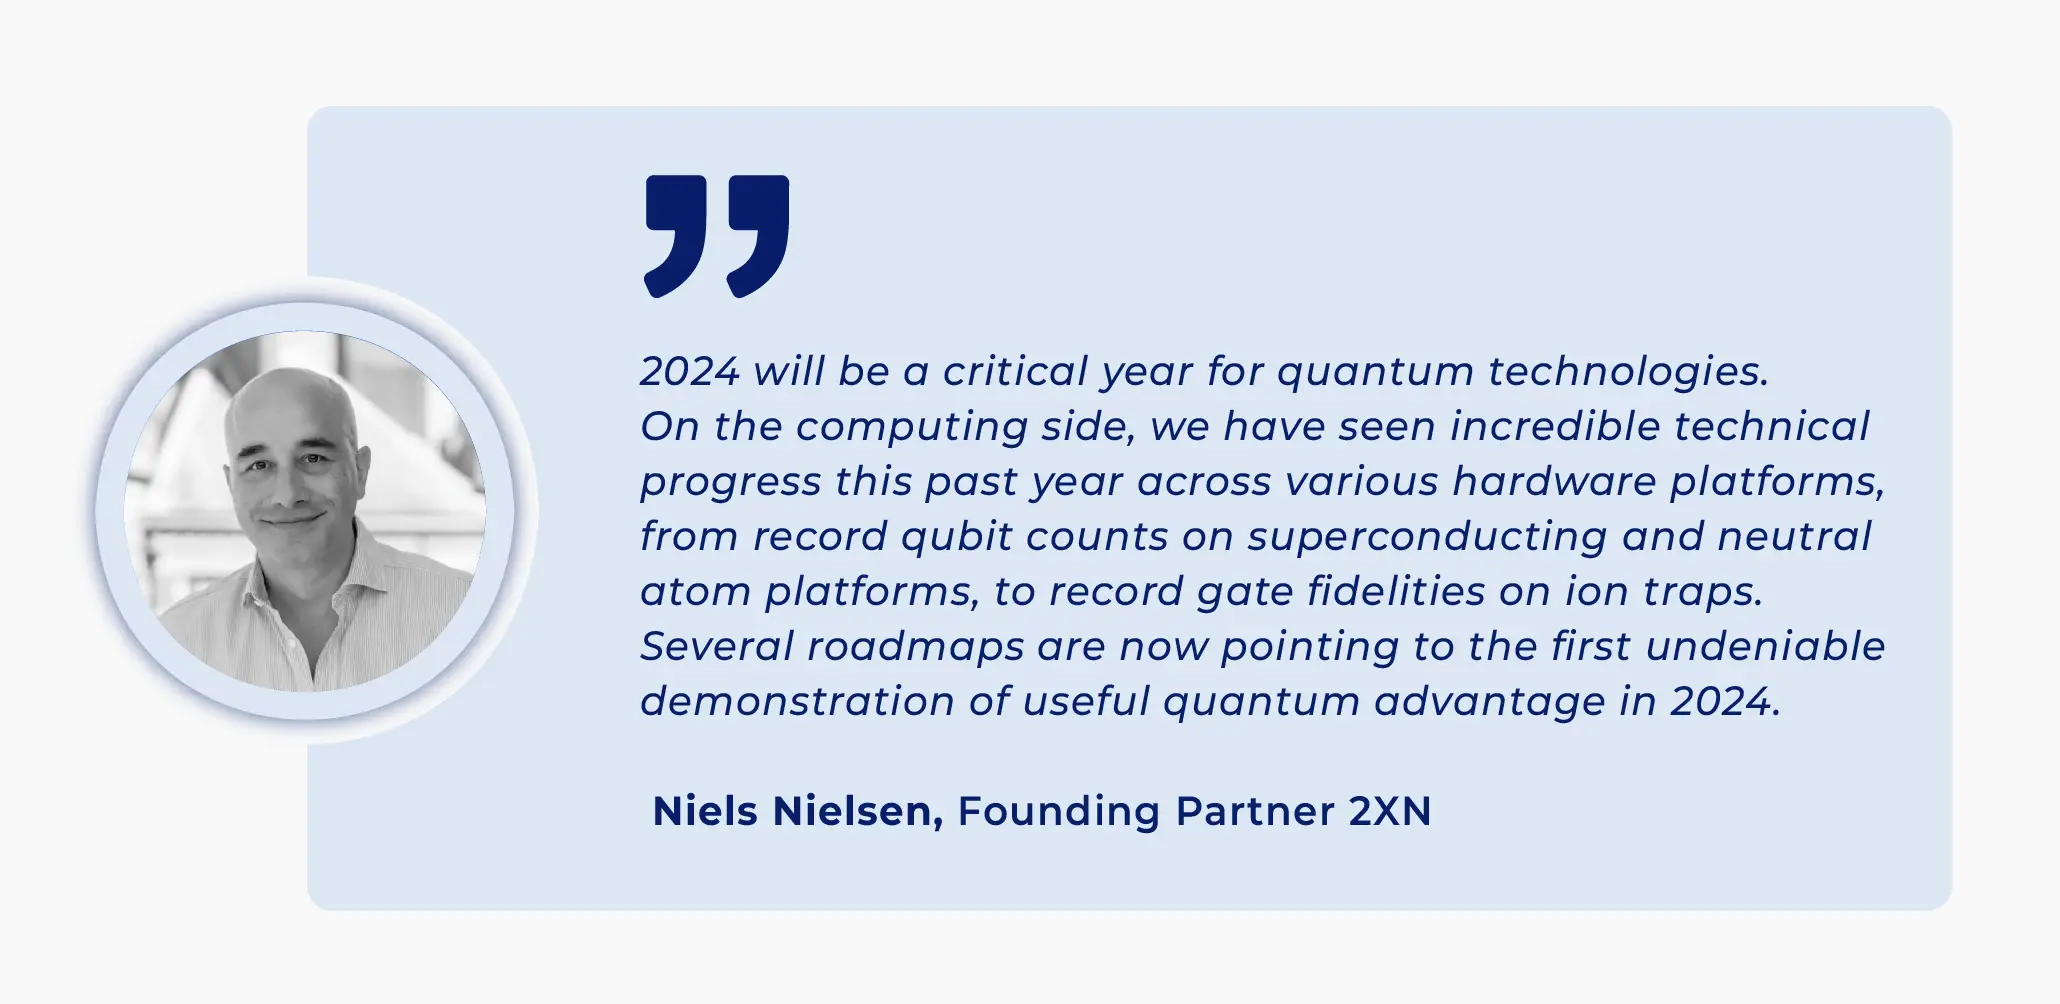 Niels Nielsen, Founding Partner 2XN